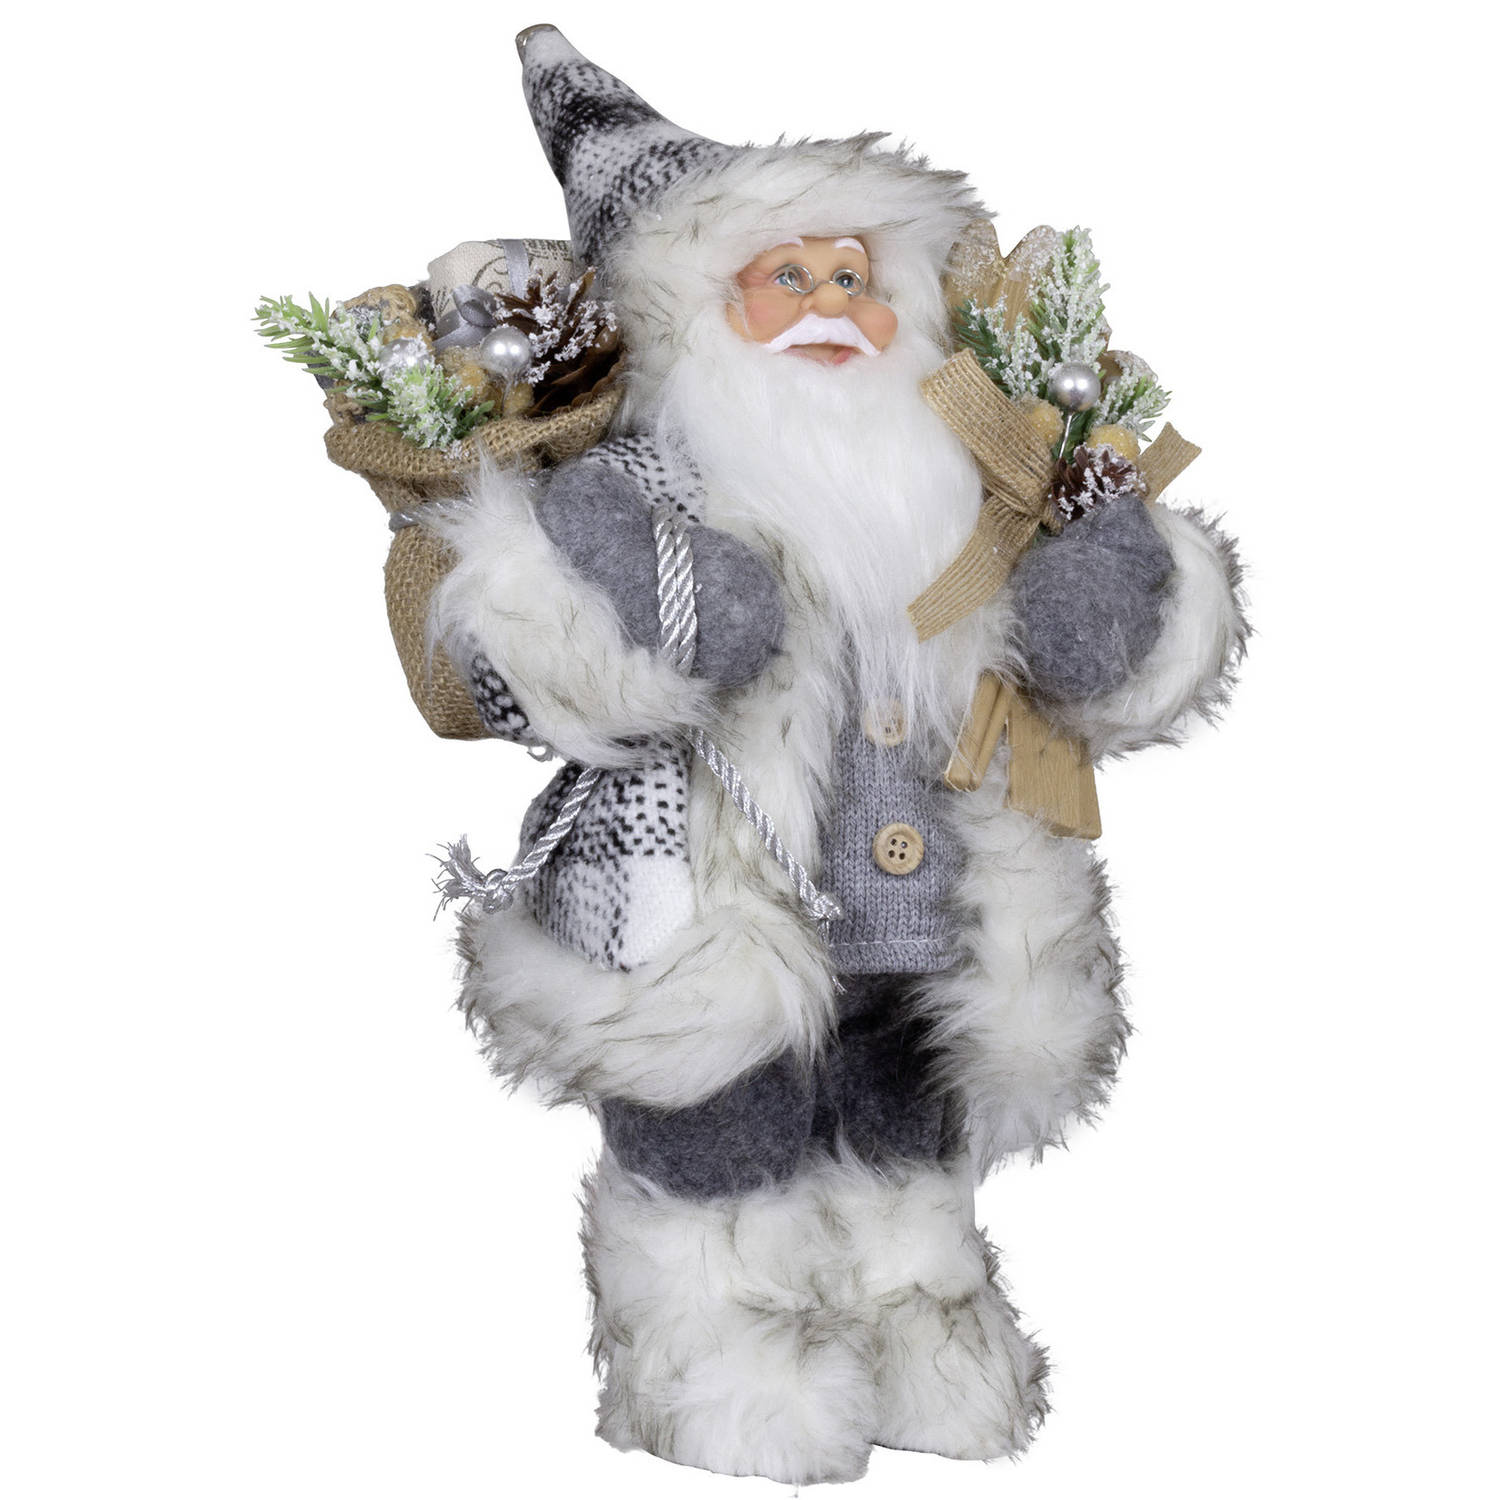 Kerstman decoratie pop - H30 cm - grijs - staand - kerst beeld - kerst figuur